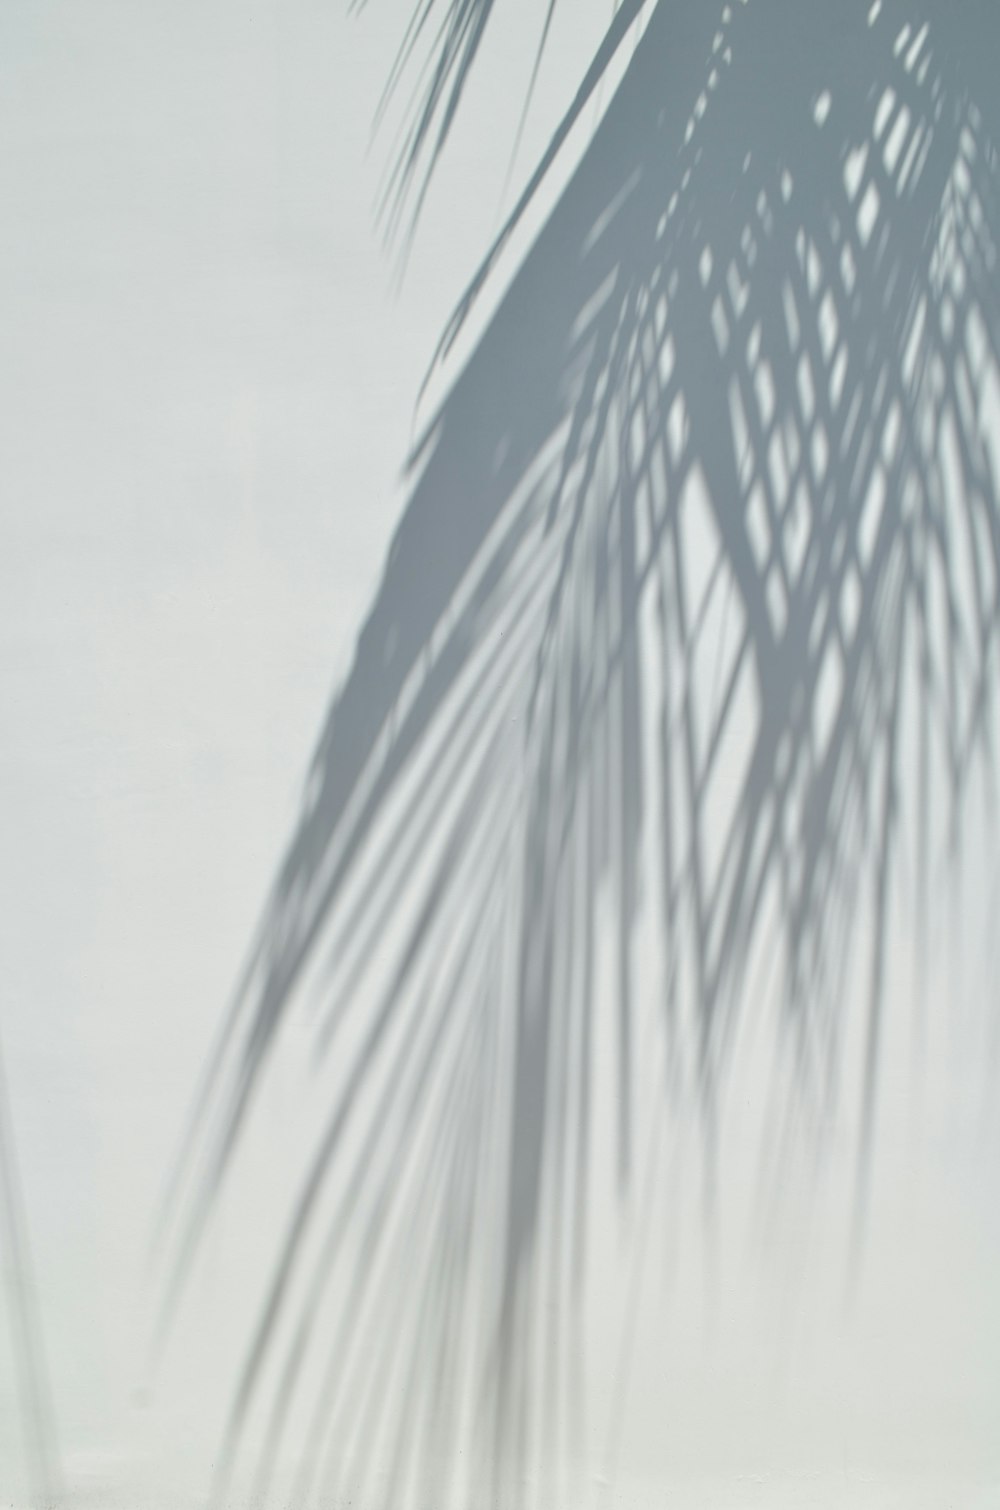 Eine Palme wirft einen Schatten auf eine weiße Wand